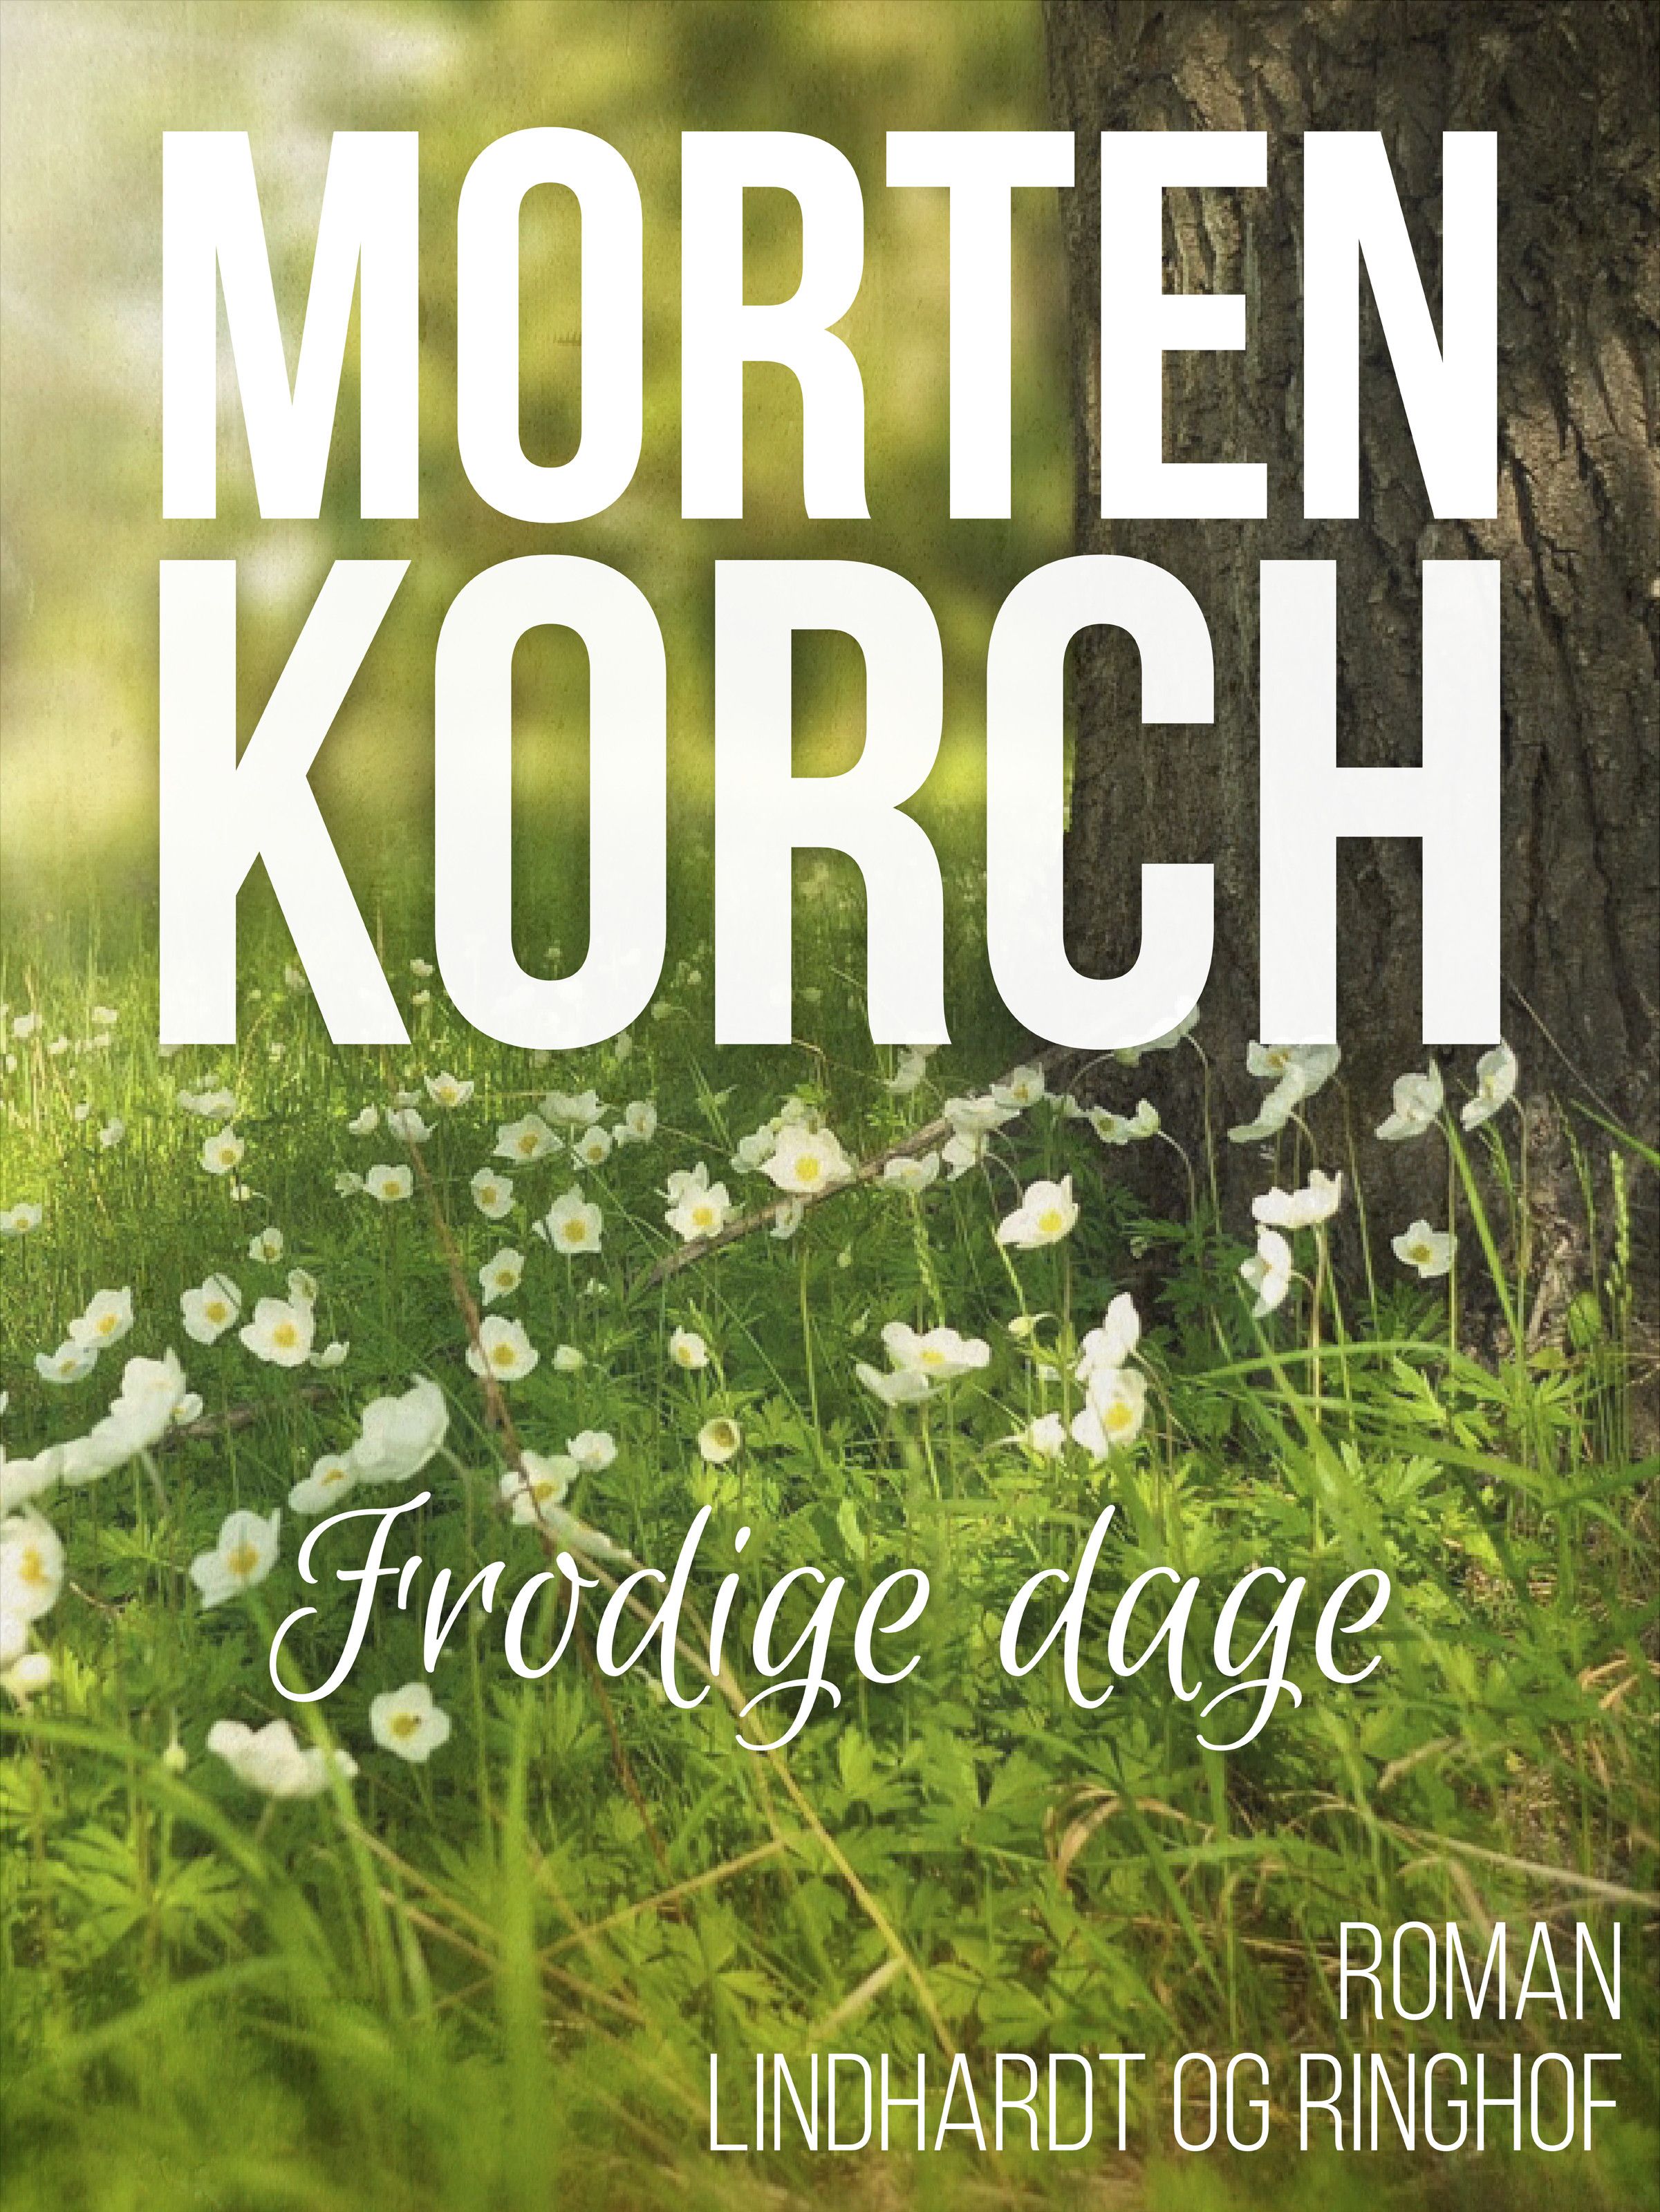 Frodige dage, ljudbok av Morten Korch